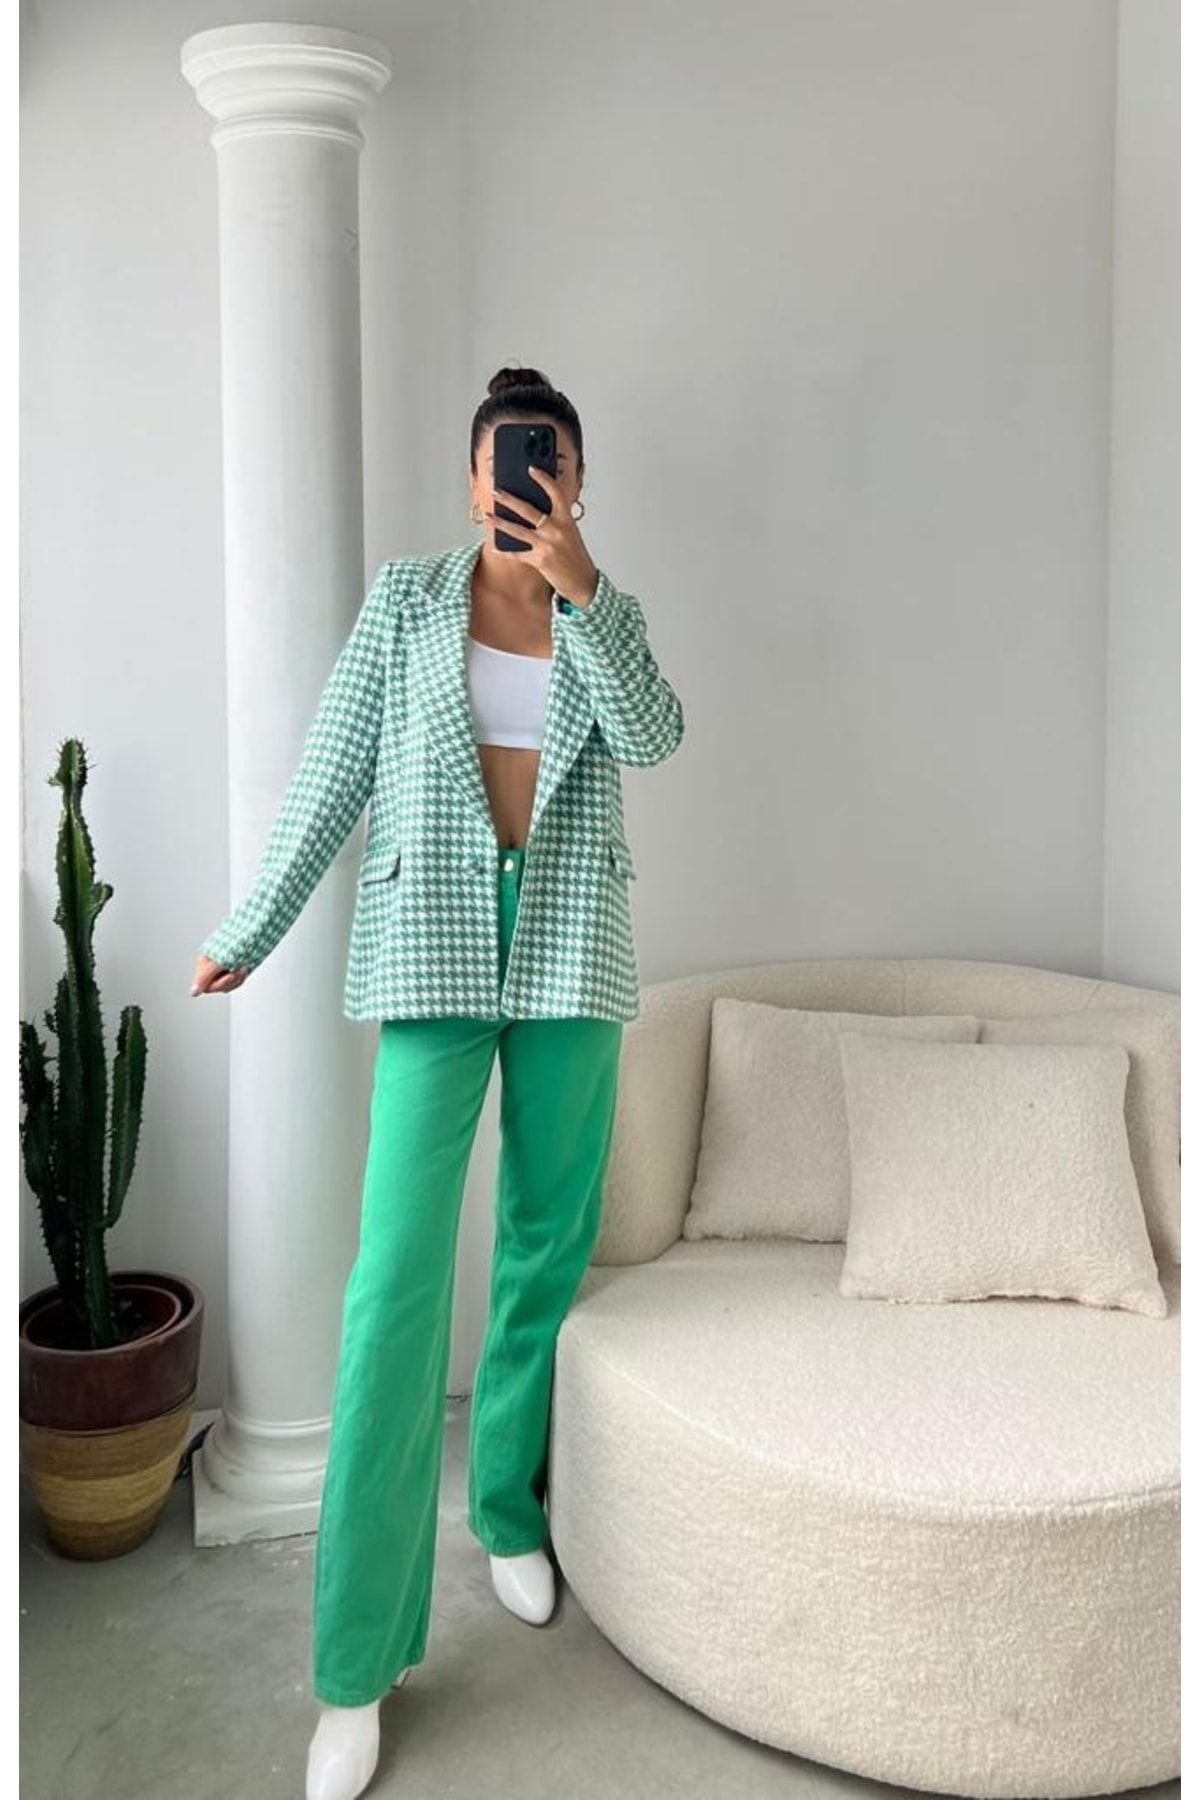 manana fashion Tek Düğme Detaylı Kazayağı Yeşil Blazer Astarlı Ceket